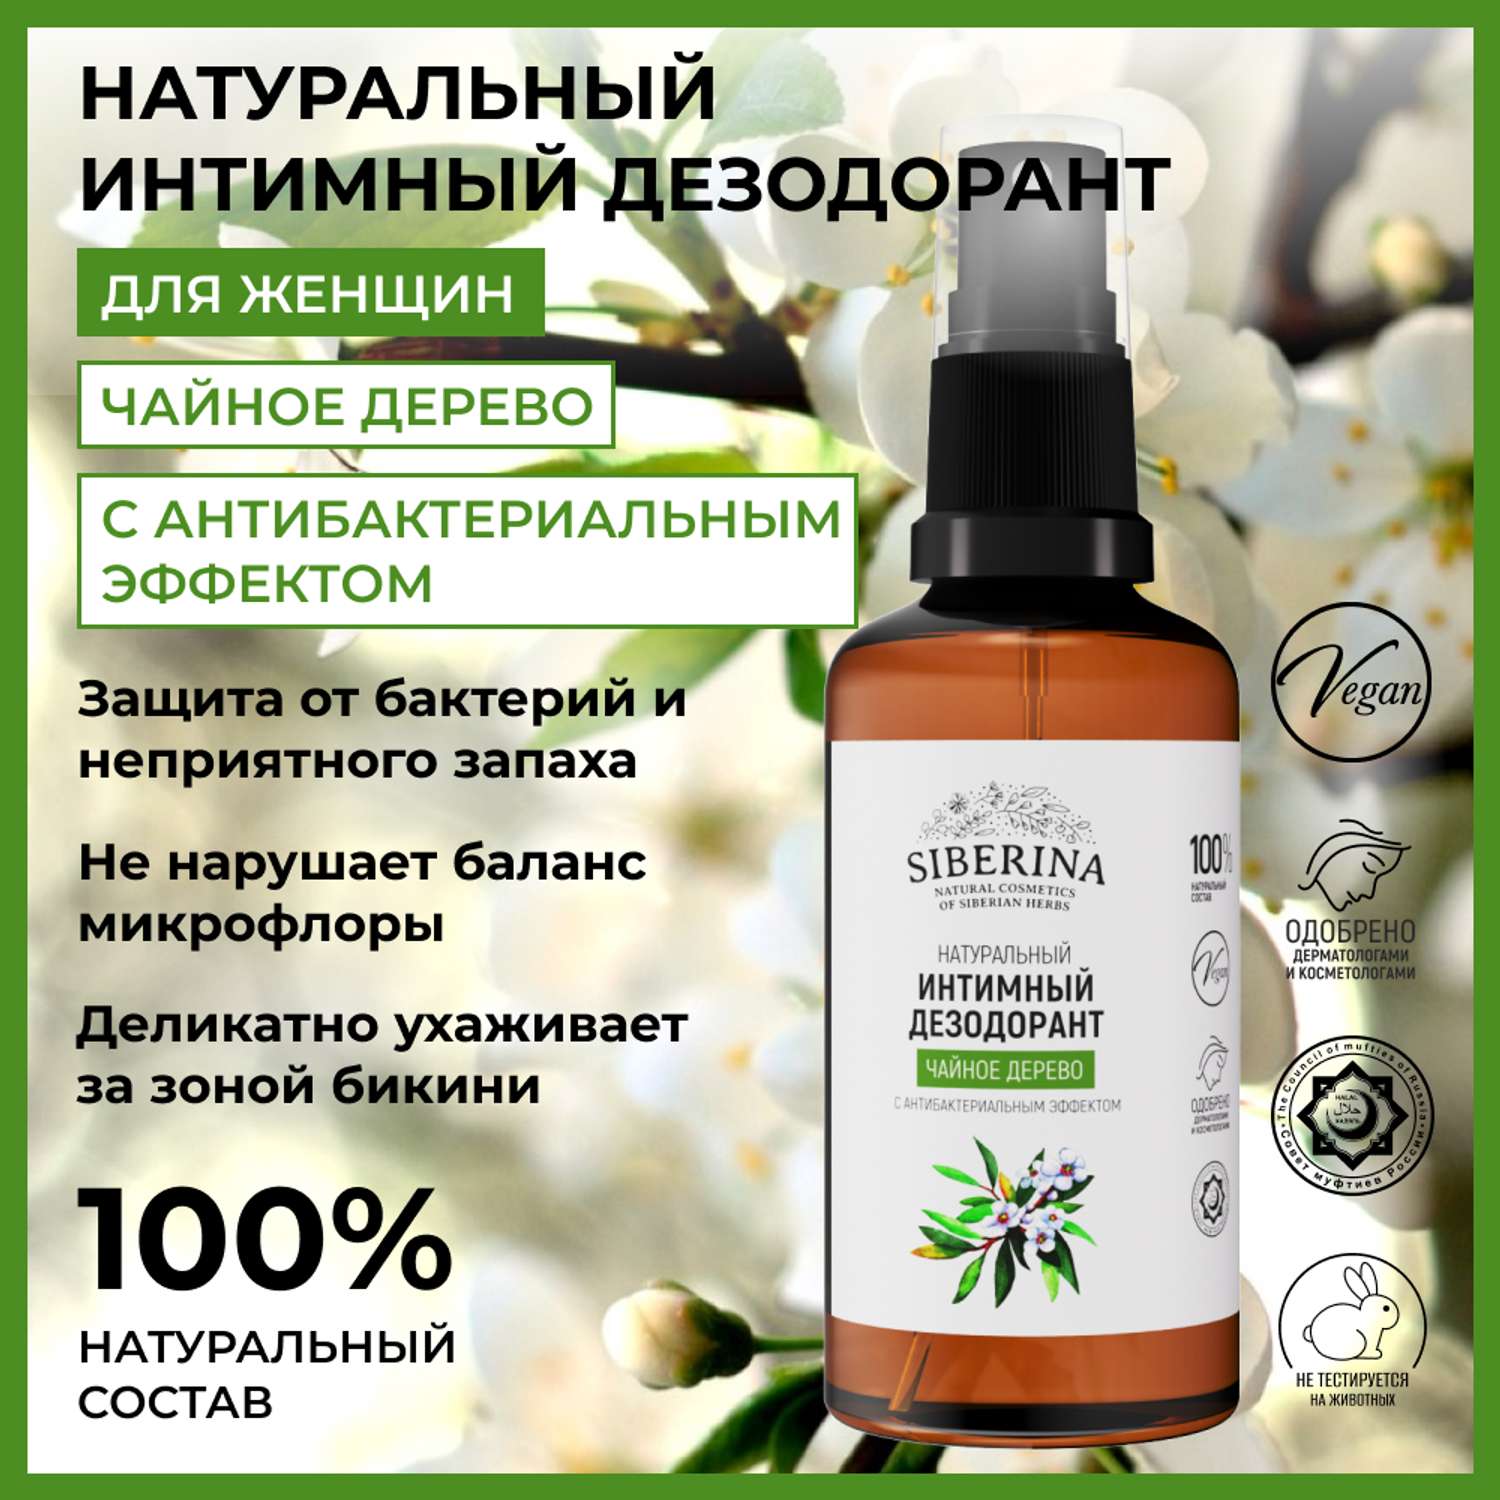 Интимный дезодорант Siberina натуральный «Чайное дерево» антибактериальный без парабенов 50 мл - фото 2